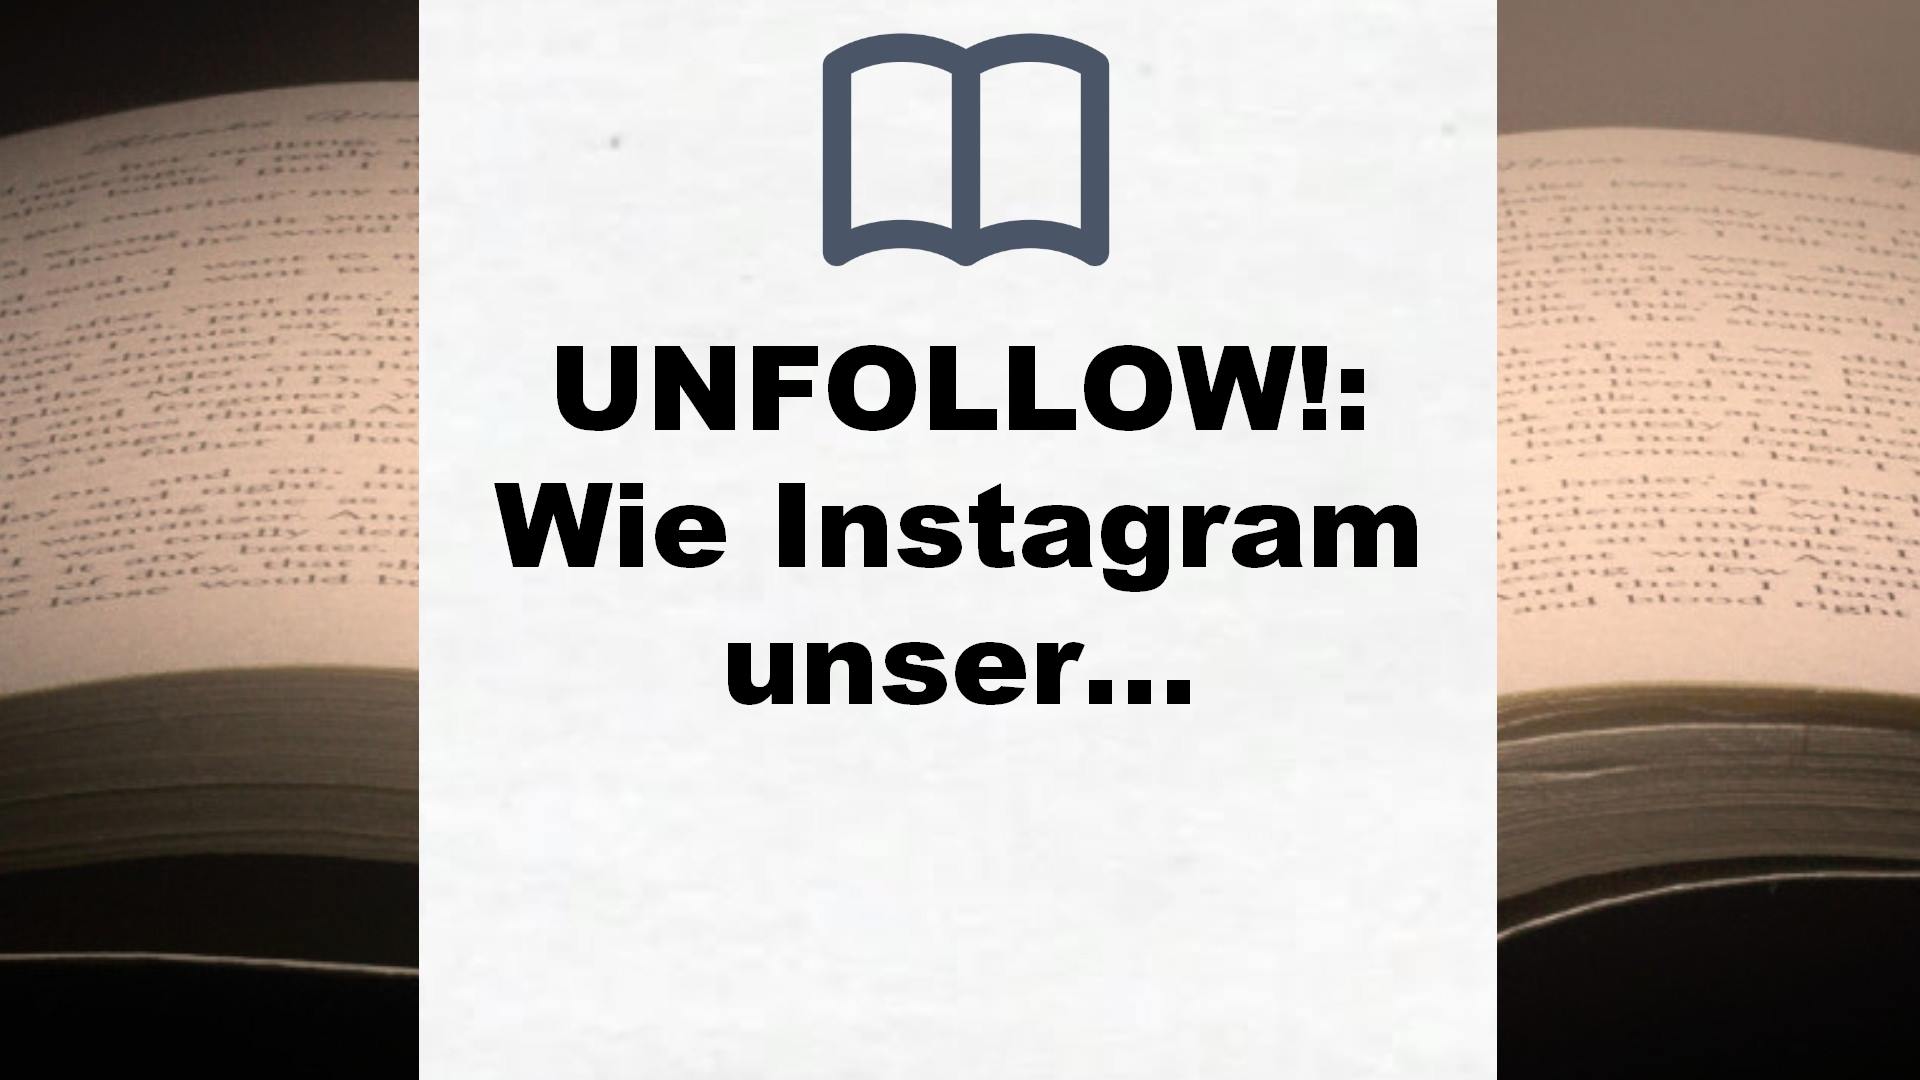 UNFOLLOW!: Wie Instagram unser Leben zerstört (SPIEGEL-Bestseller) – Buchrezension